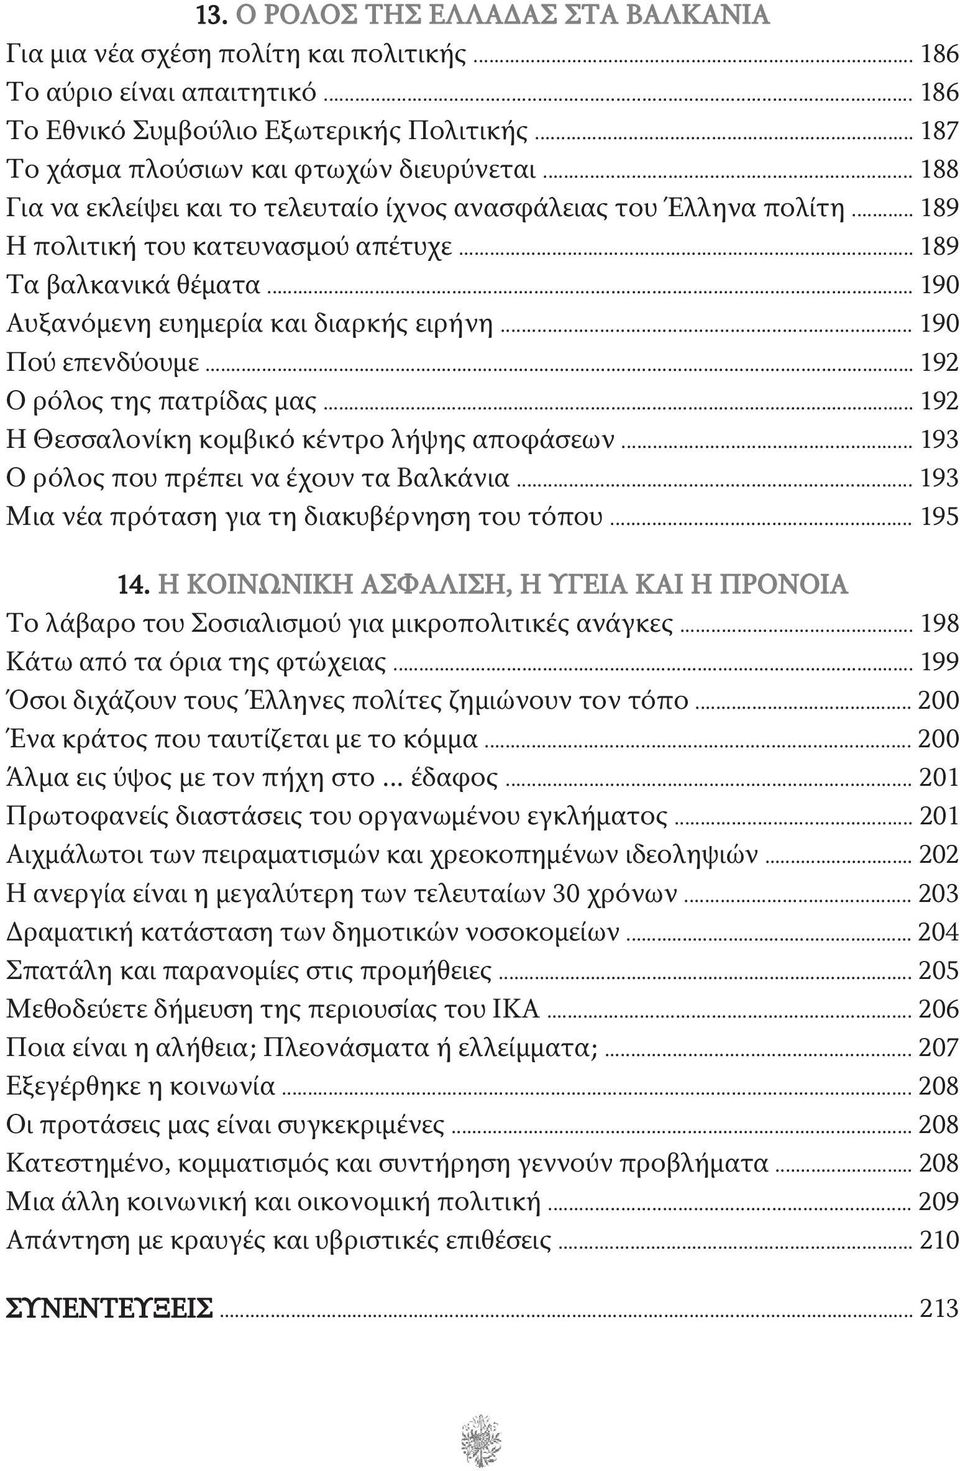 .. 190 Αυξανόμενη ευημερία και διαρκής ειρήνη... 190 Πού επενδύουμε... 192 Ο ρόλος της πατρίδας μας... 192 Η Θεσσαλονίκη κομβικό κέντρο λήψης αποφάσεων... 193 Ο ρόλος που πρέπει να έχουν τα Βαλκάνια.